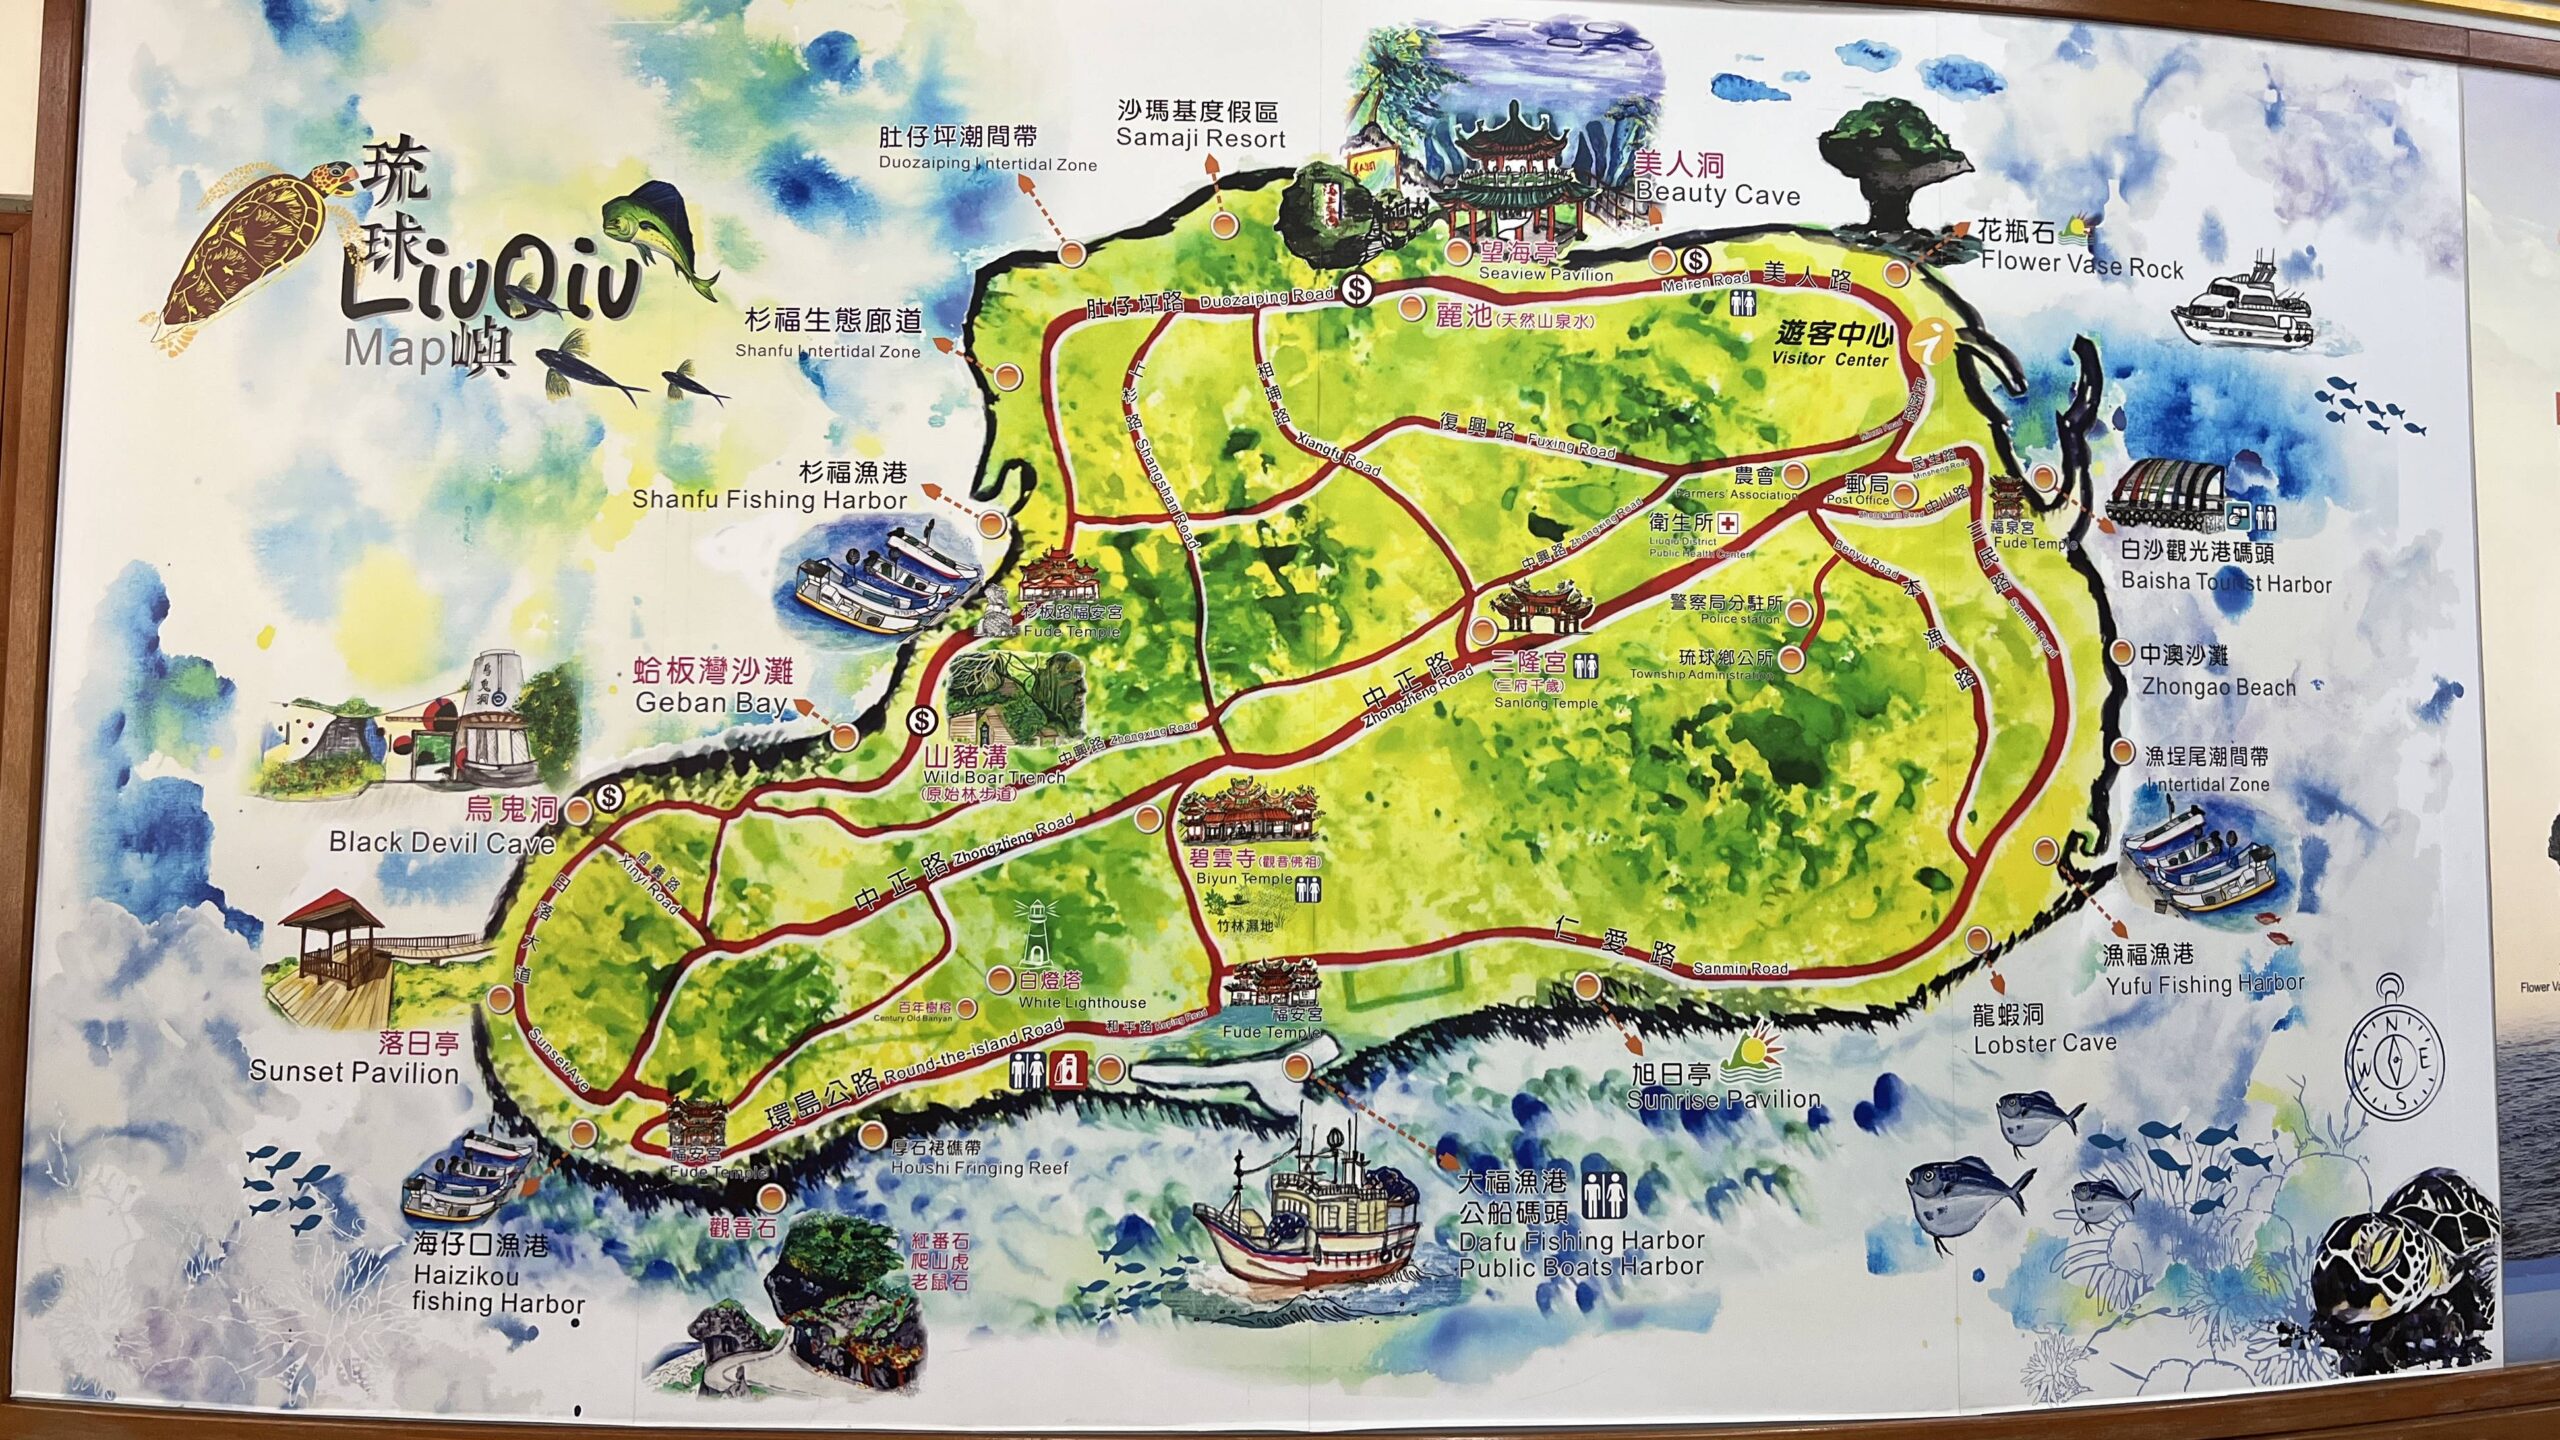 島嶼低碳物語！電能環島、循環餐具、友善環境的水陸活動，小琉球不塑島的綠色足跡旅行 @。CJ夫人。